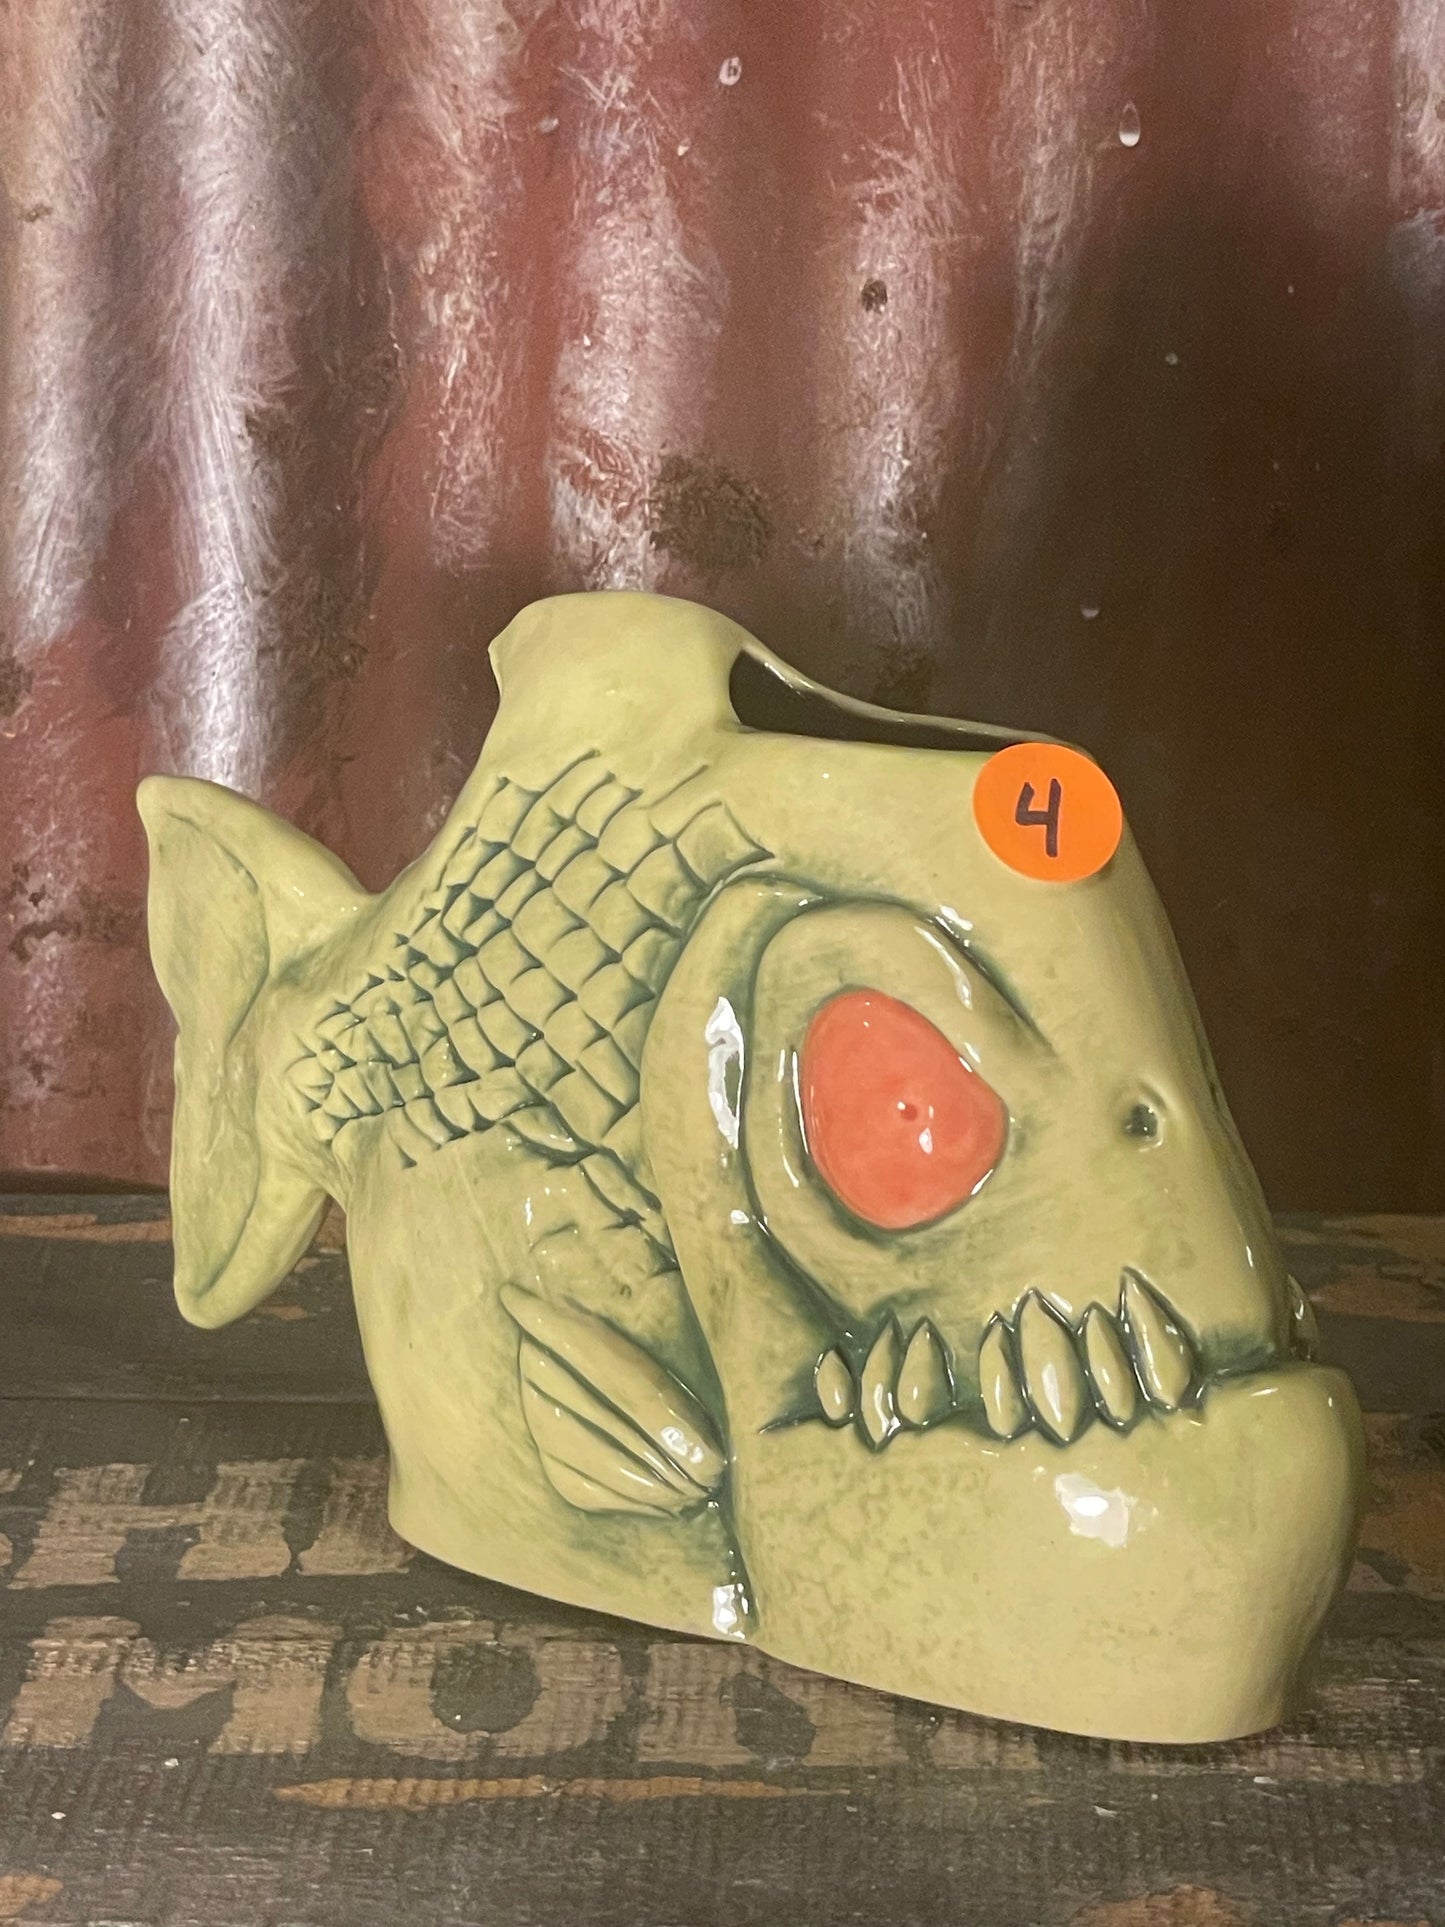 Rotten Banana - Piranha